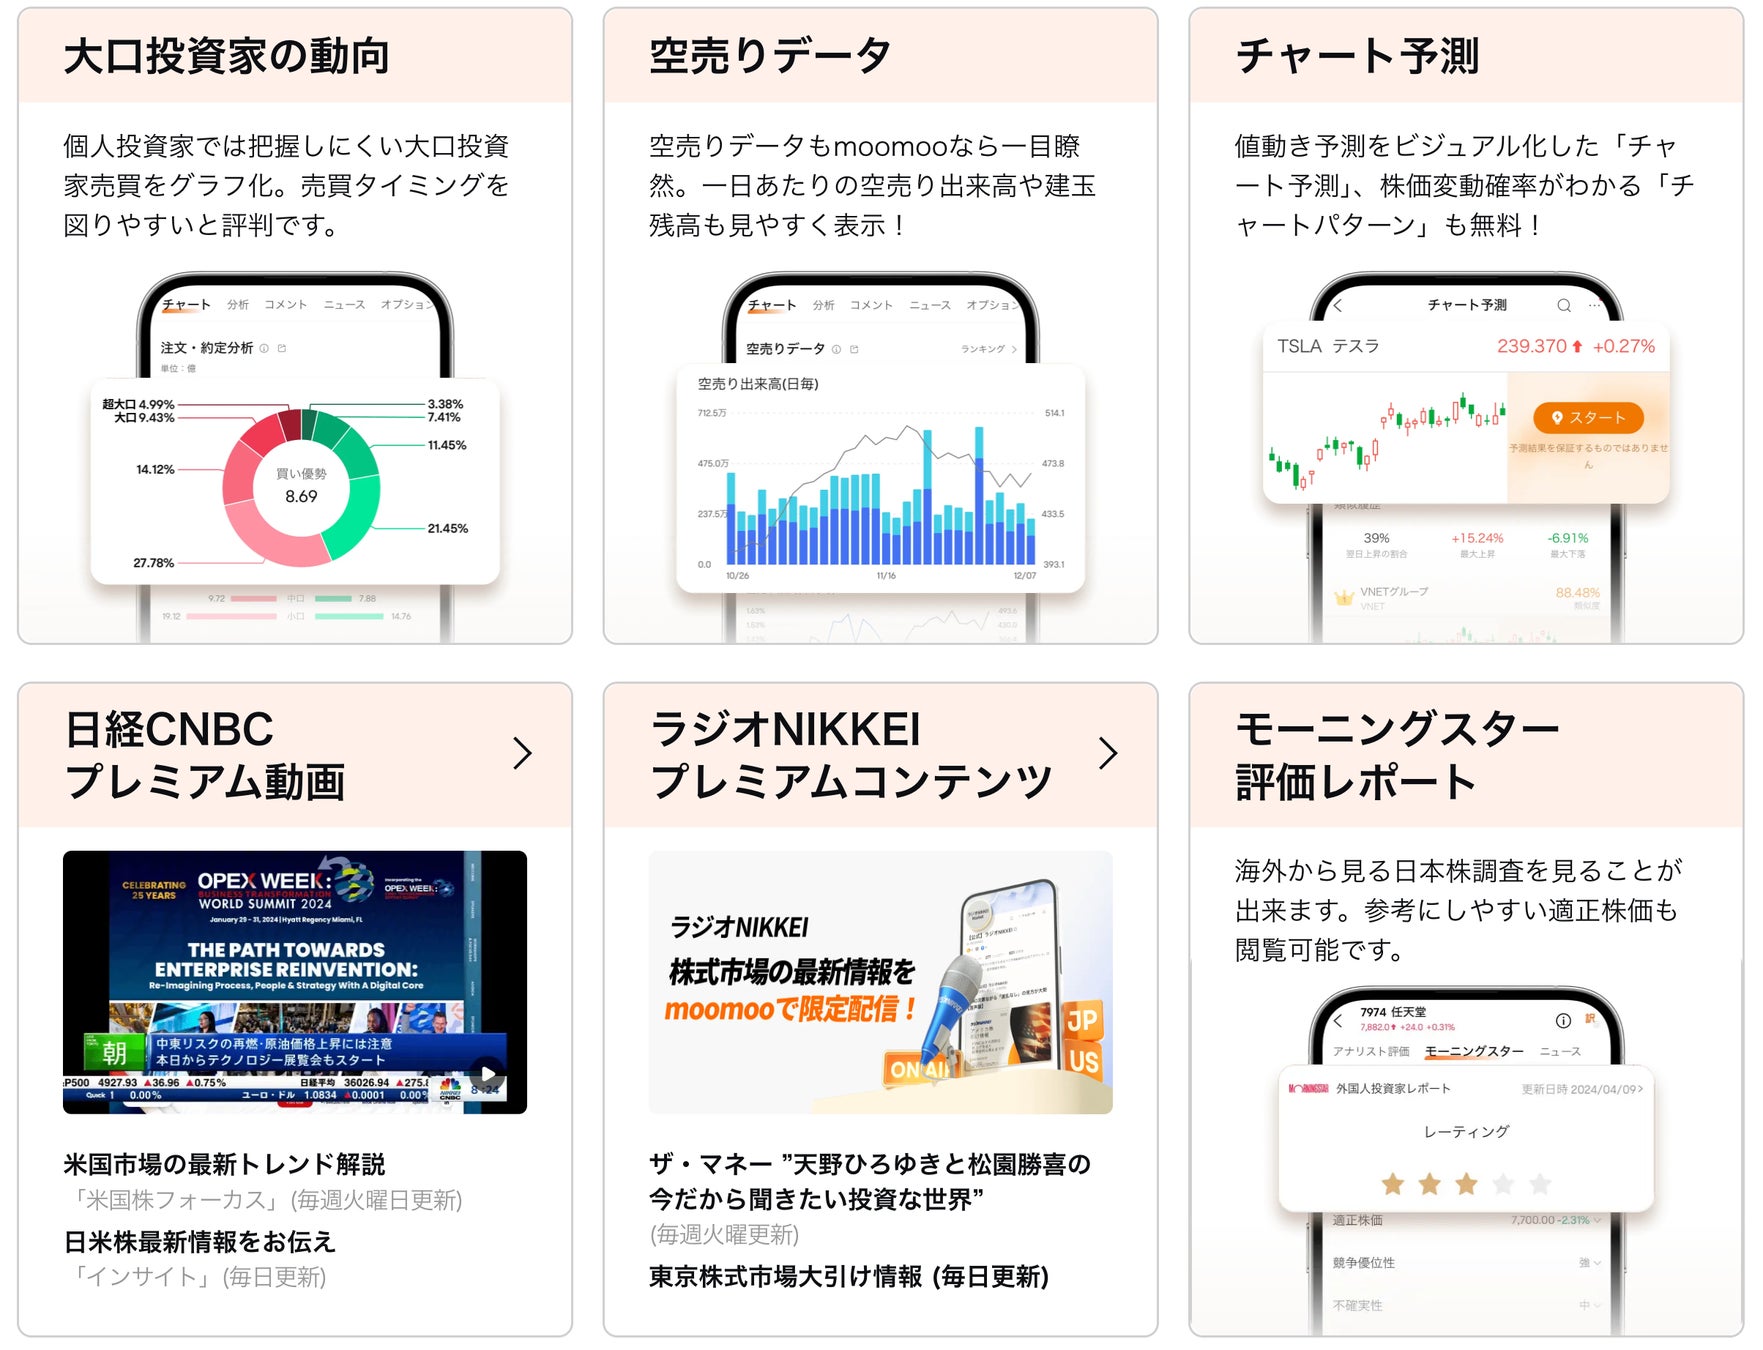 【SBIいきいき少短】京都信用金庫が提供するアプリ、ウェブサイトにおける「SBIいきいき少短のペット保険」取扱い開始のお知らせ